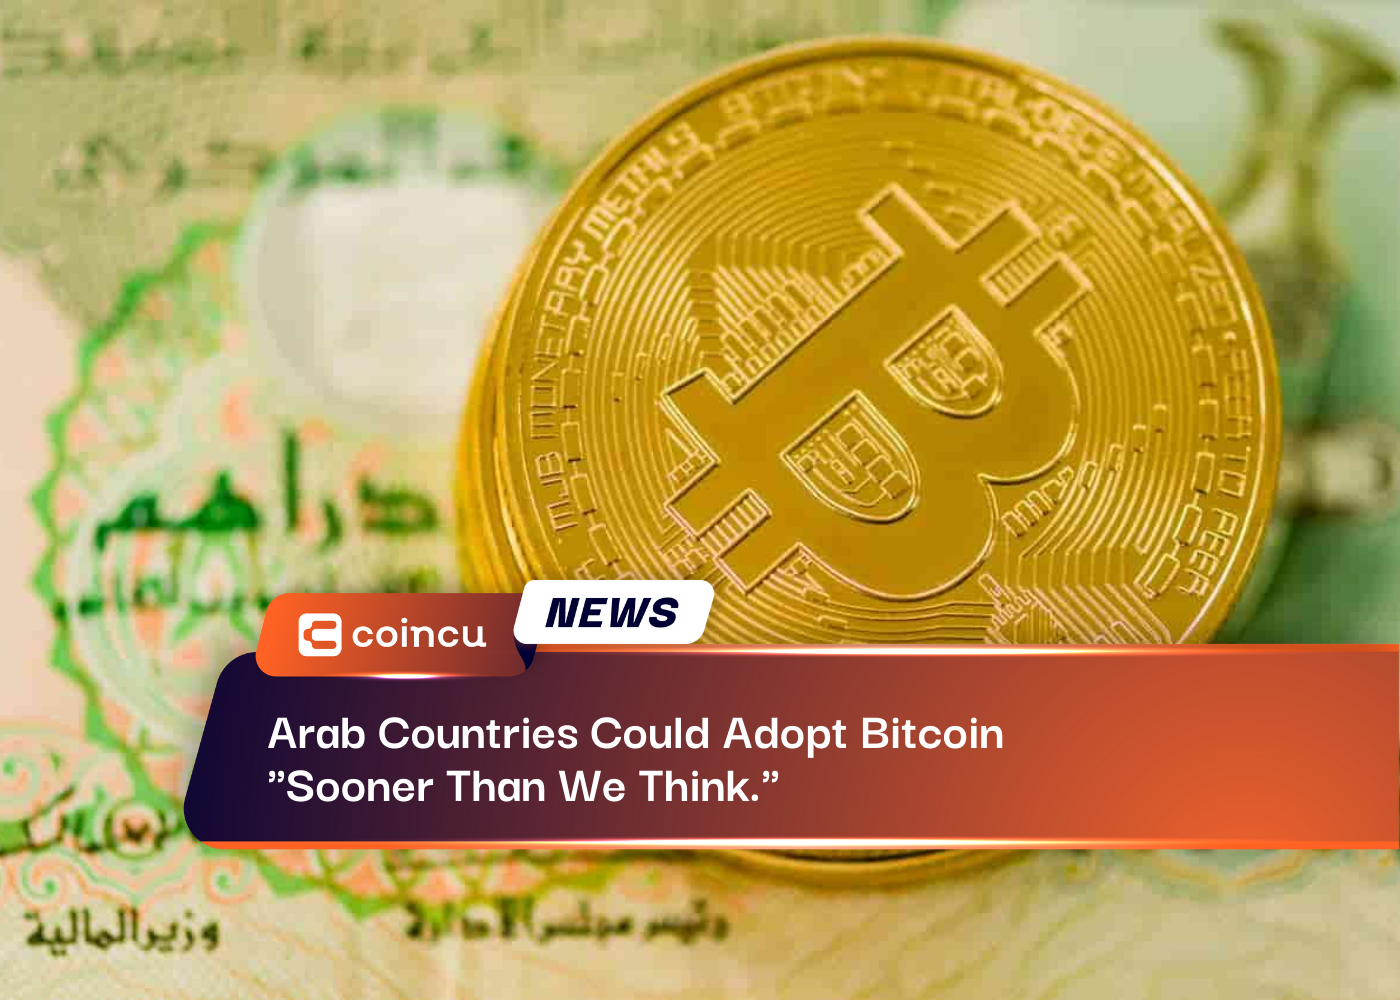 アラブ諸国は「私たちが思っているよりも早く」ビットコインを導入する可能性がある。